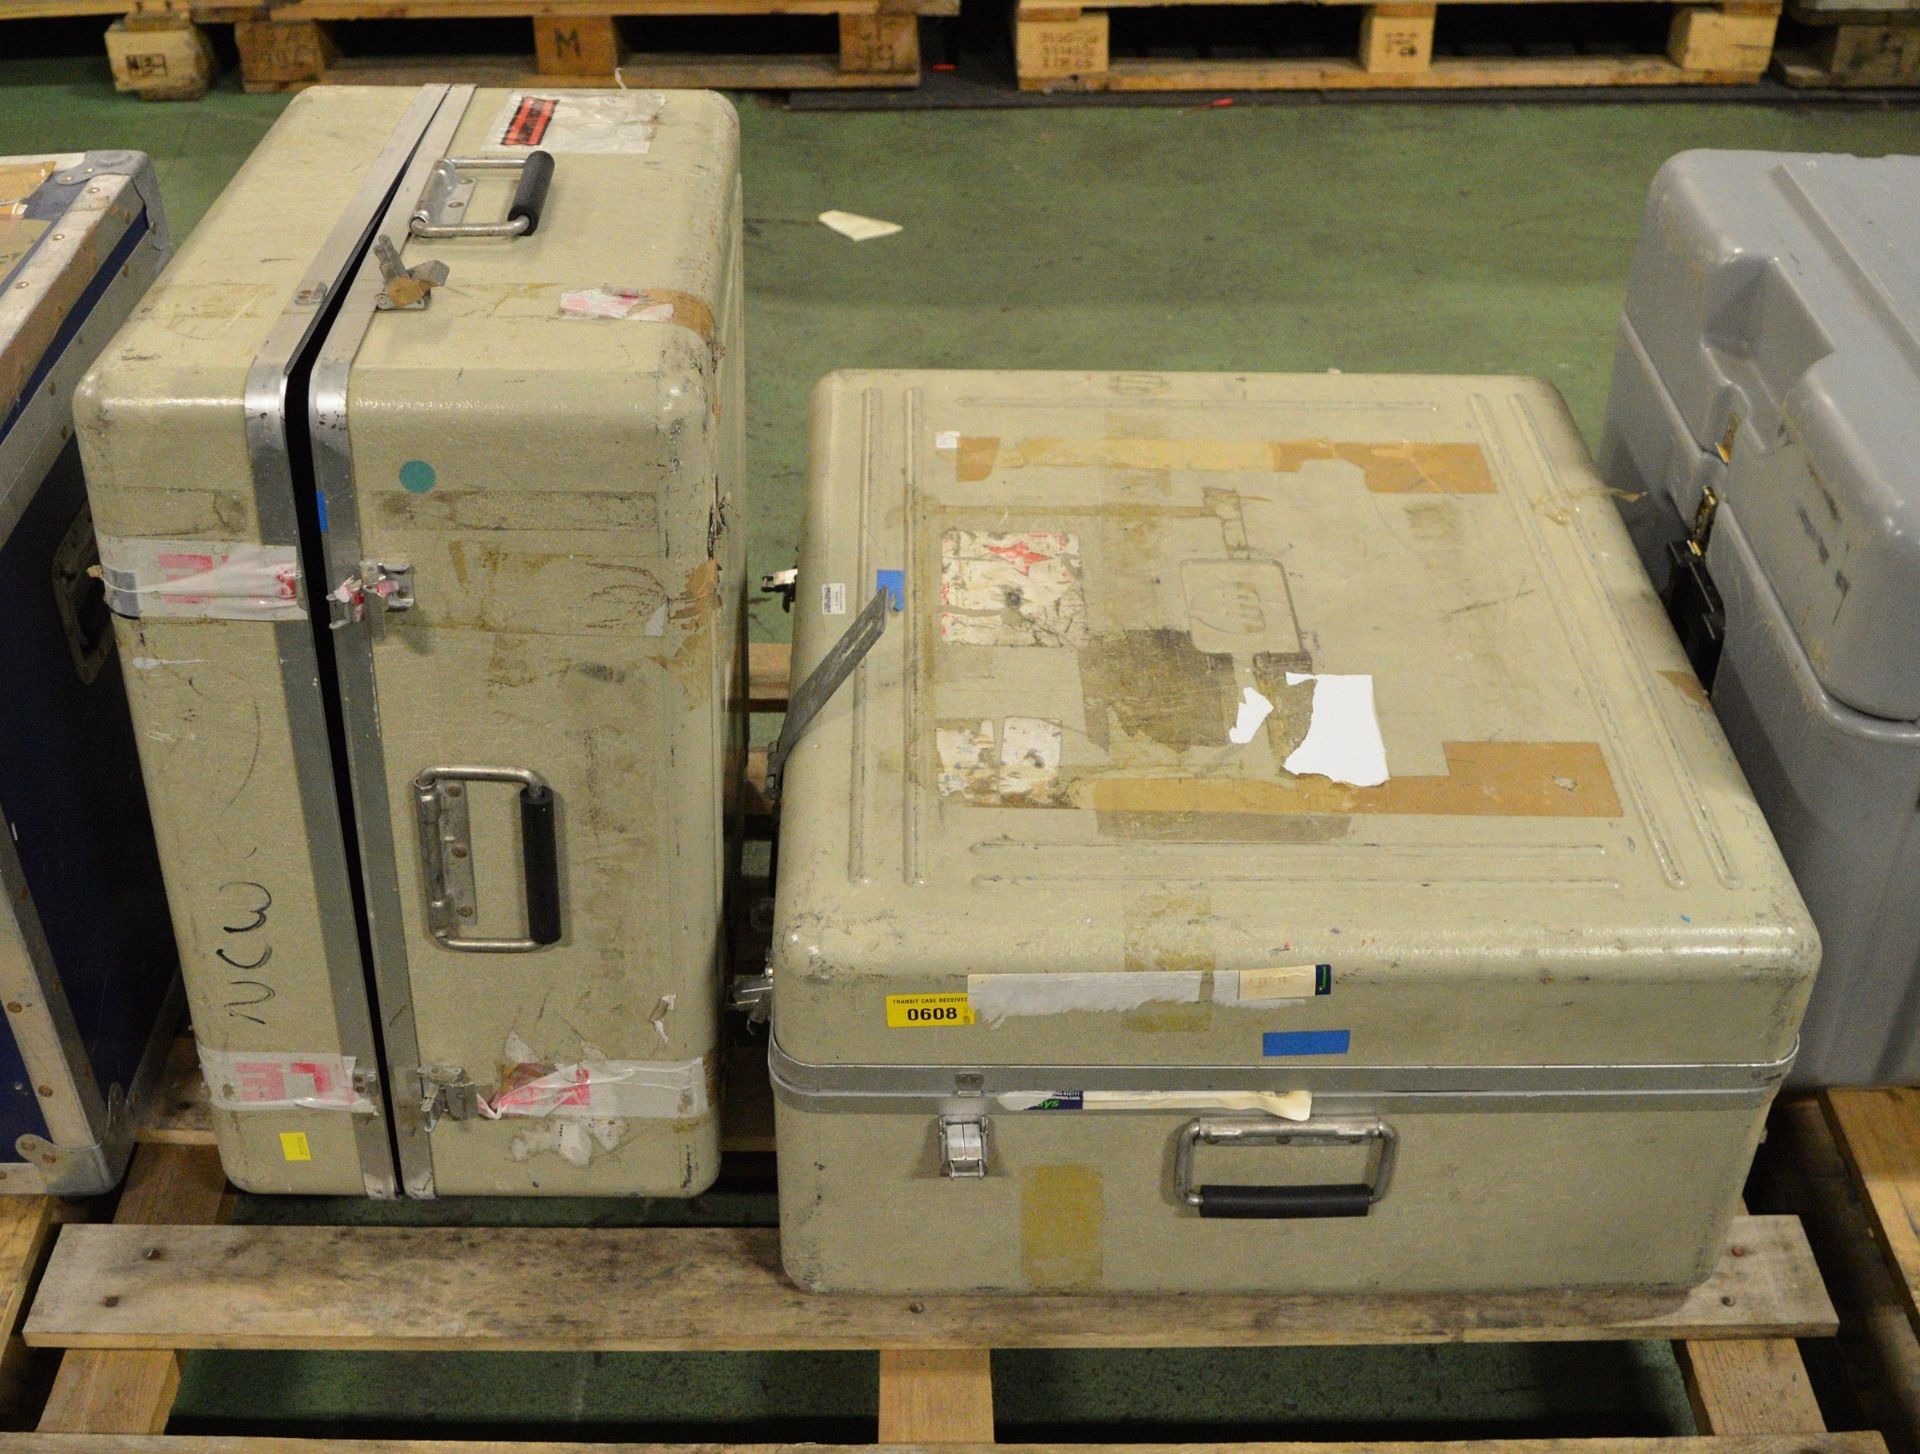 2x HP Transit cases - 580 x 540 x 300 x1, 700 x 600 x 320 x1